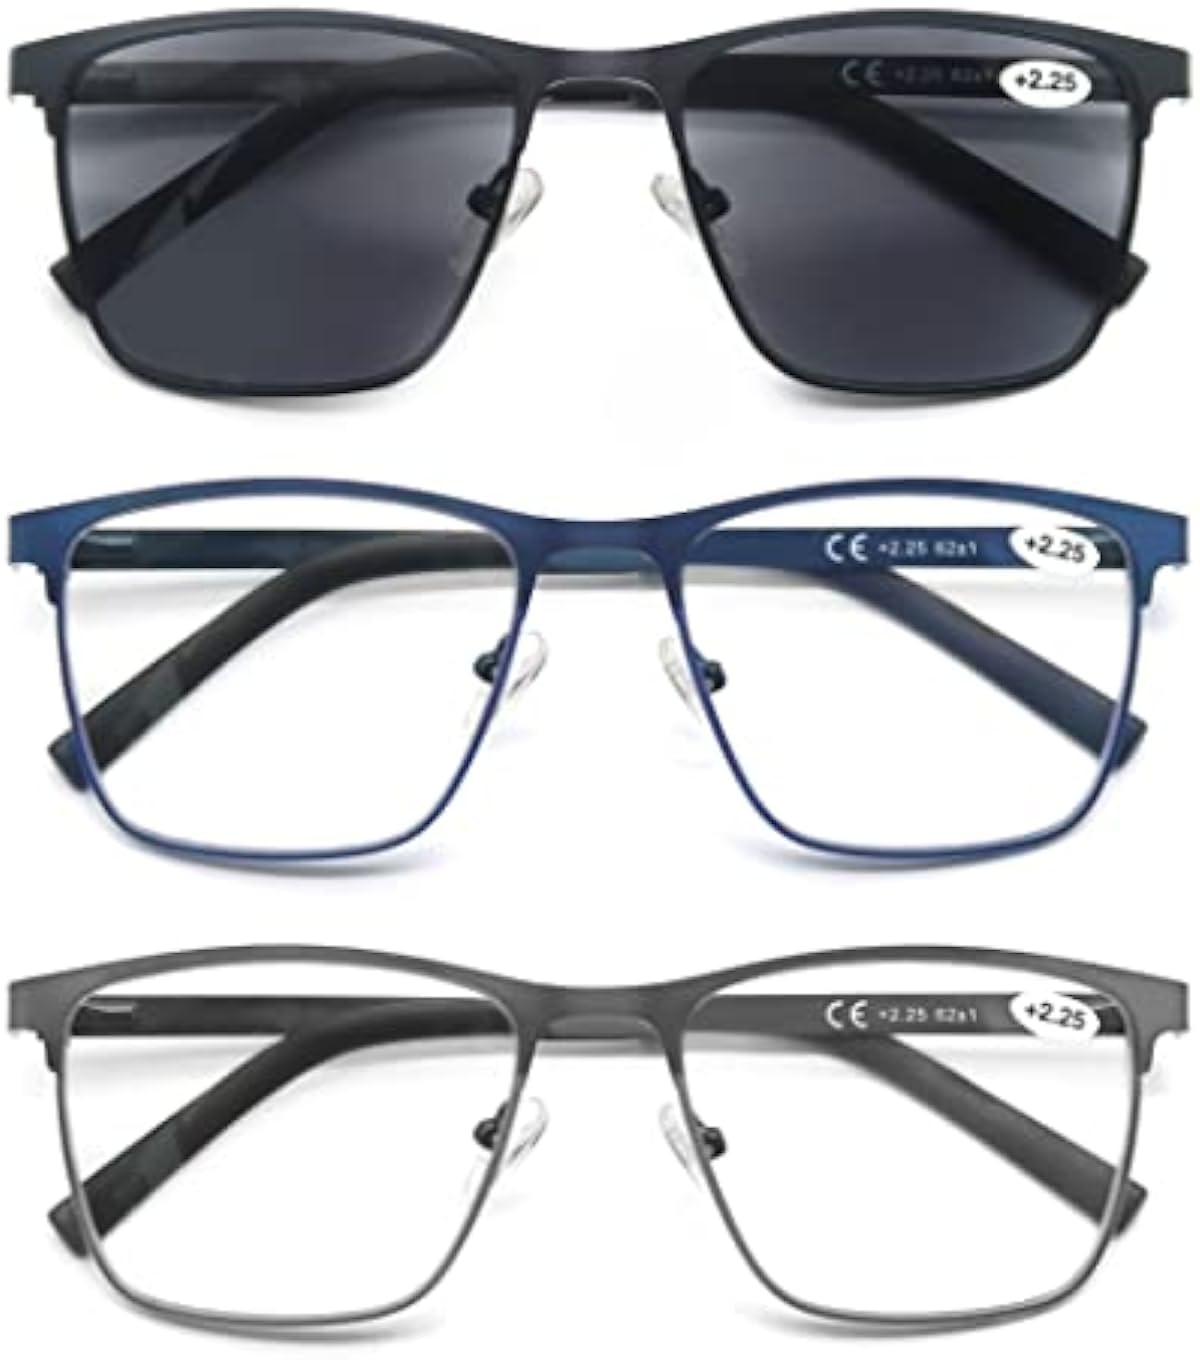 OLOMEE Reading Glasses for Men Blue Light Blocking Readers Full Metal Frame Square Cheaters 3 Pack Anti Eyestrain/Glare/UV